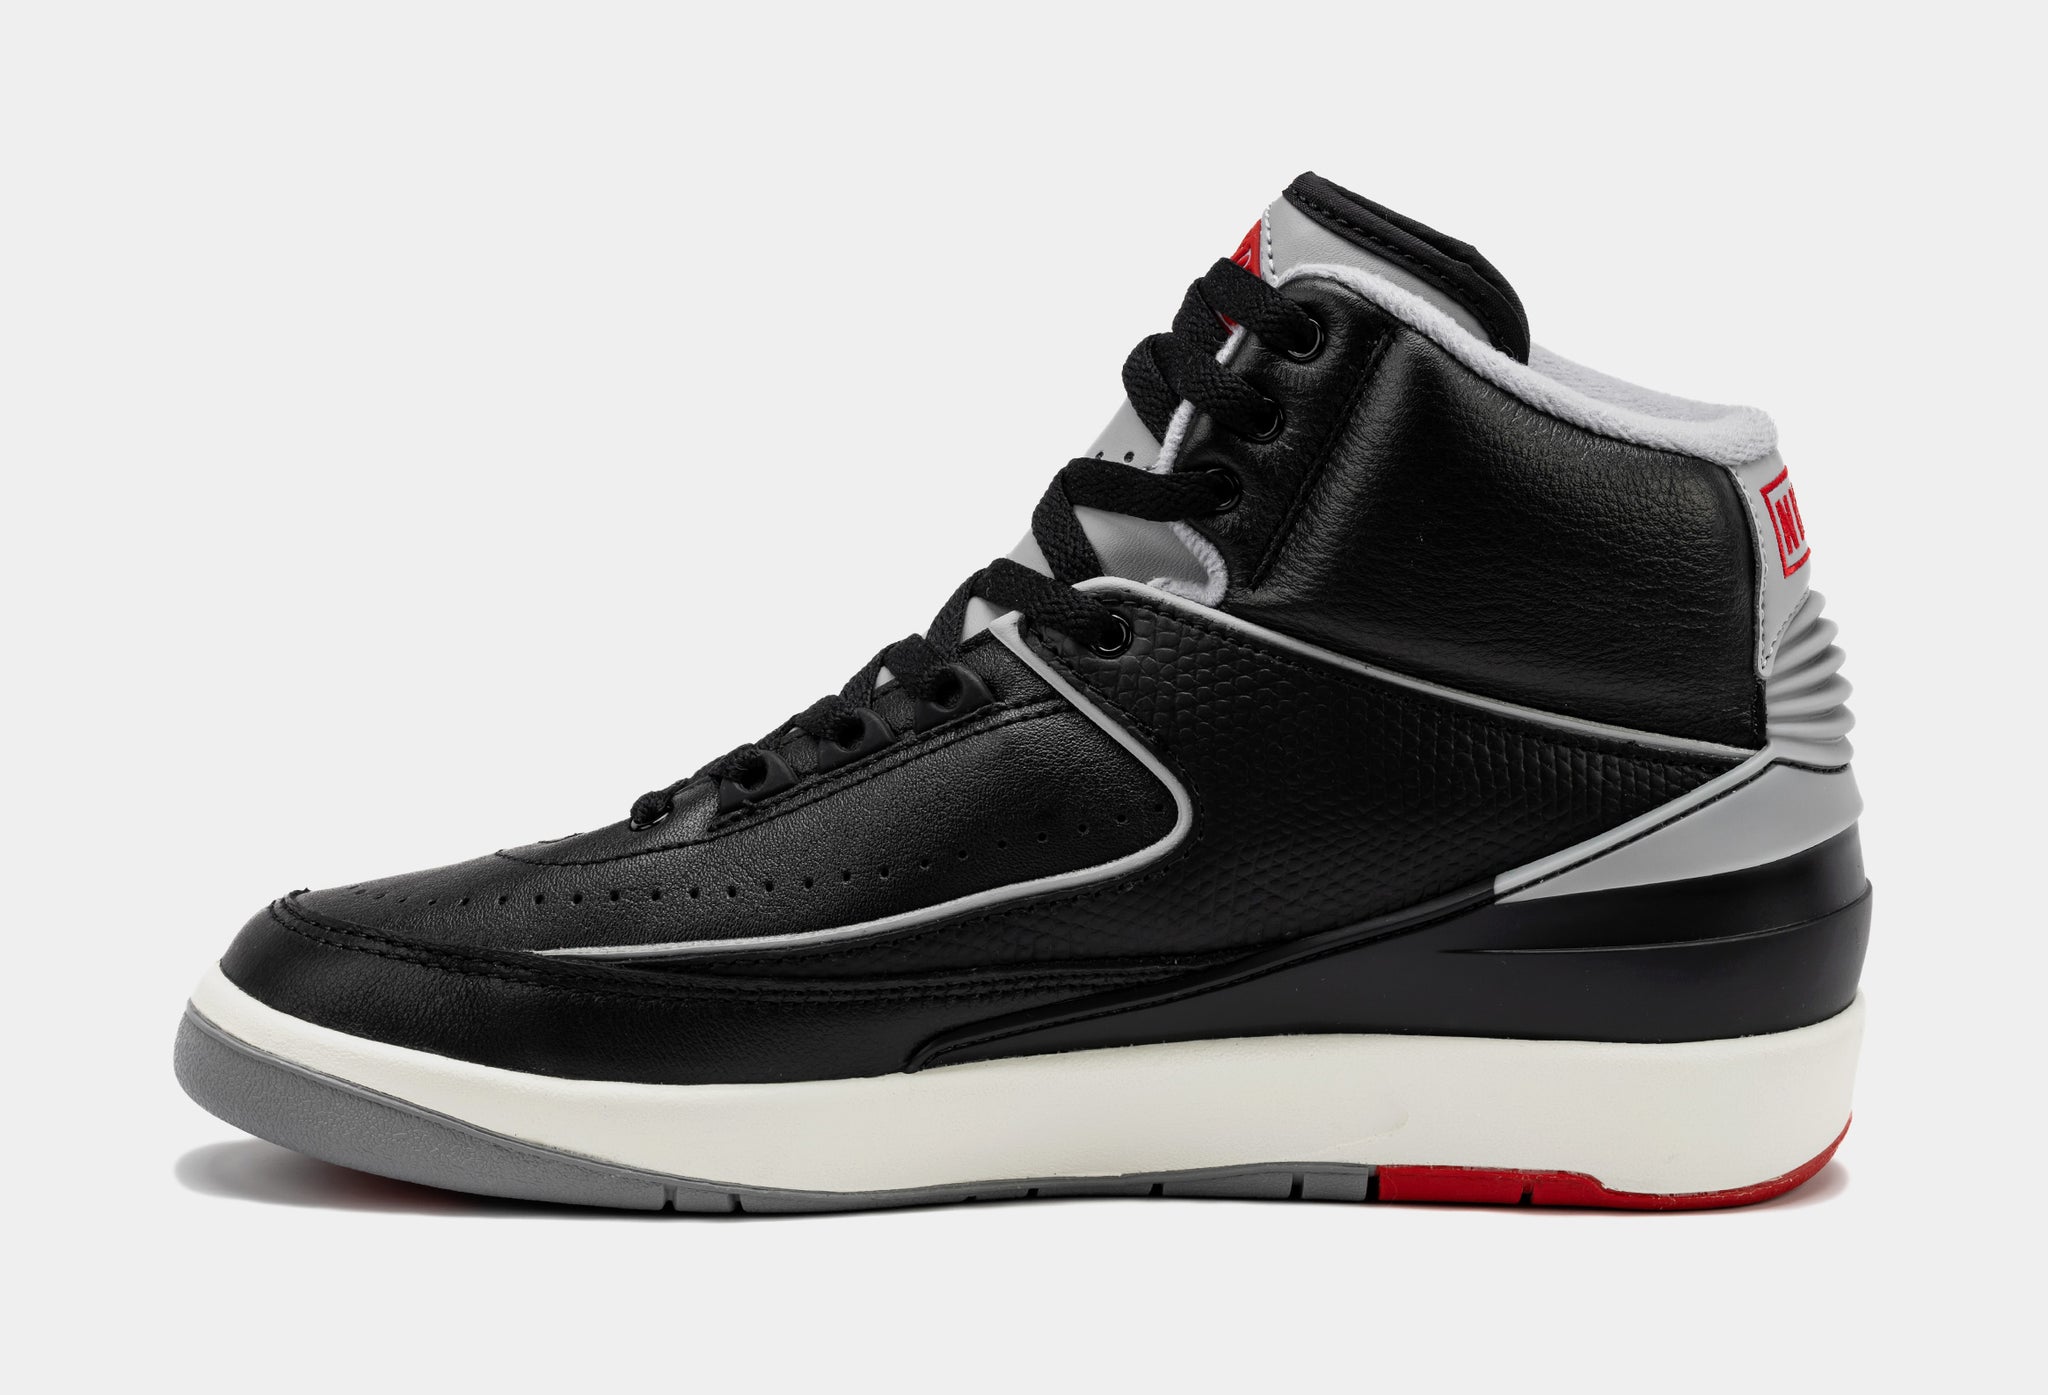 Air Jordan 2 Retro Black Cement Mens Lifestyle Shoes (Black/Cement Grey)